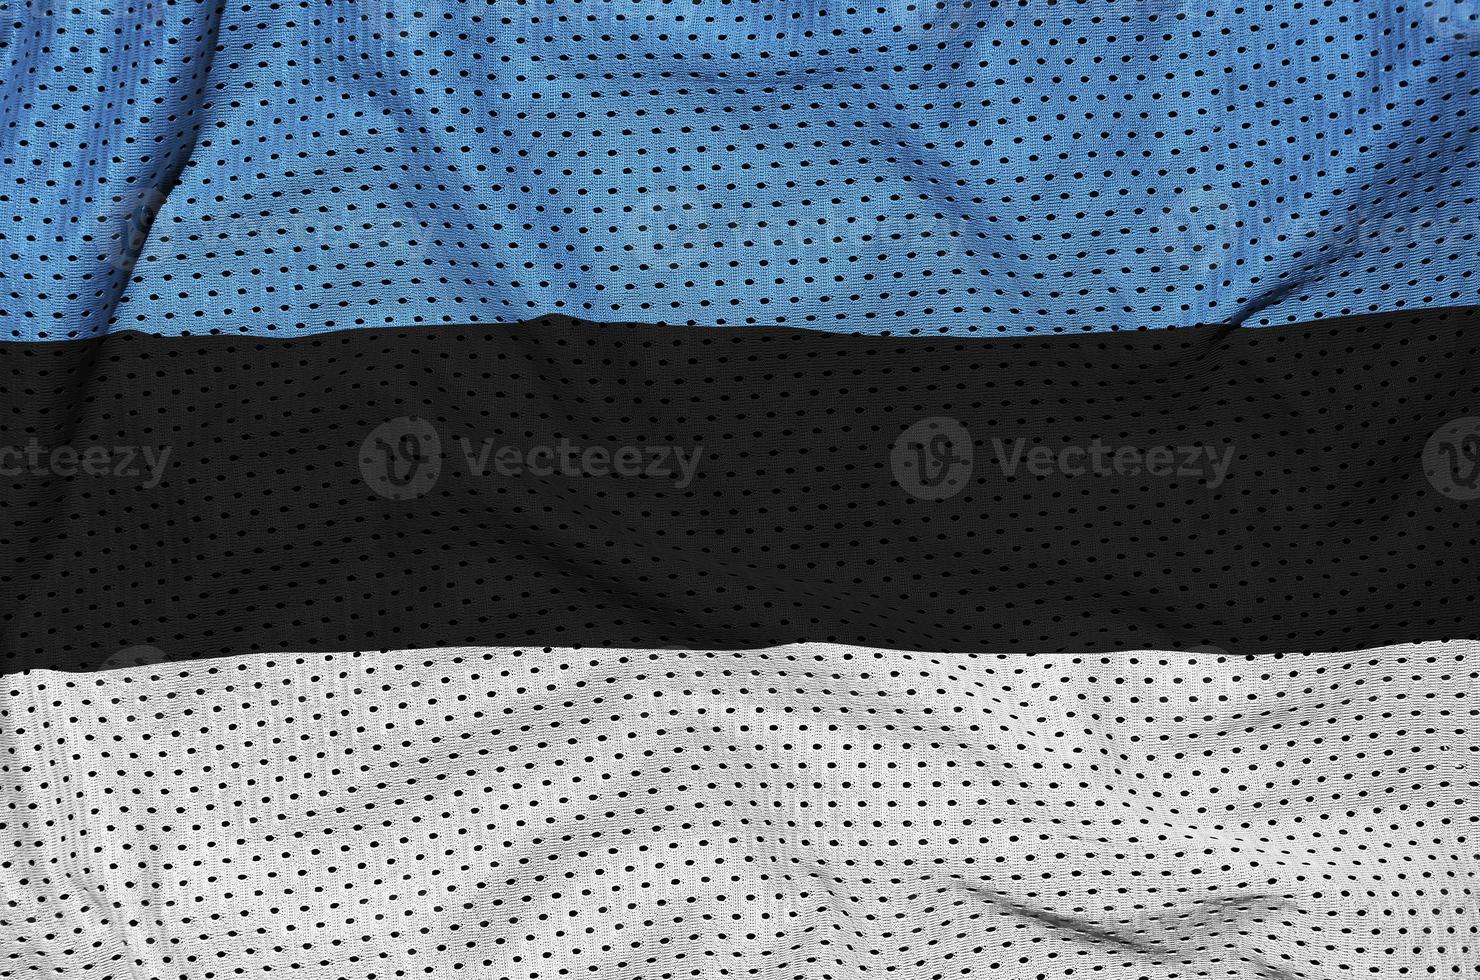 bandera de estonia impresa en una tela de malla deportiva de nailon y poliéster foto